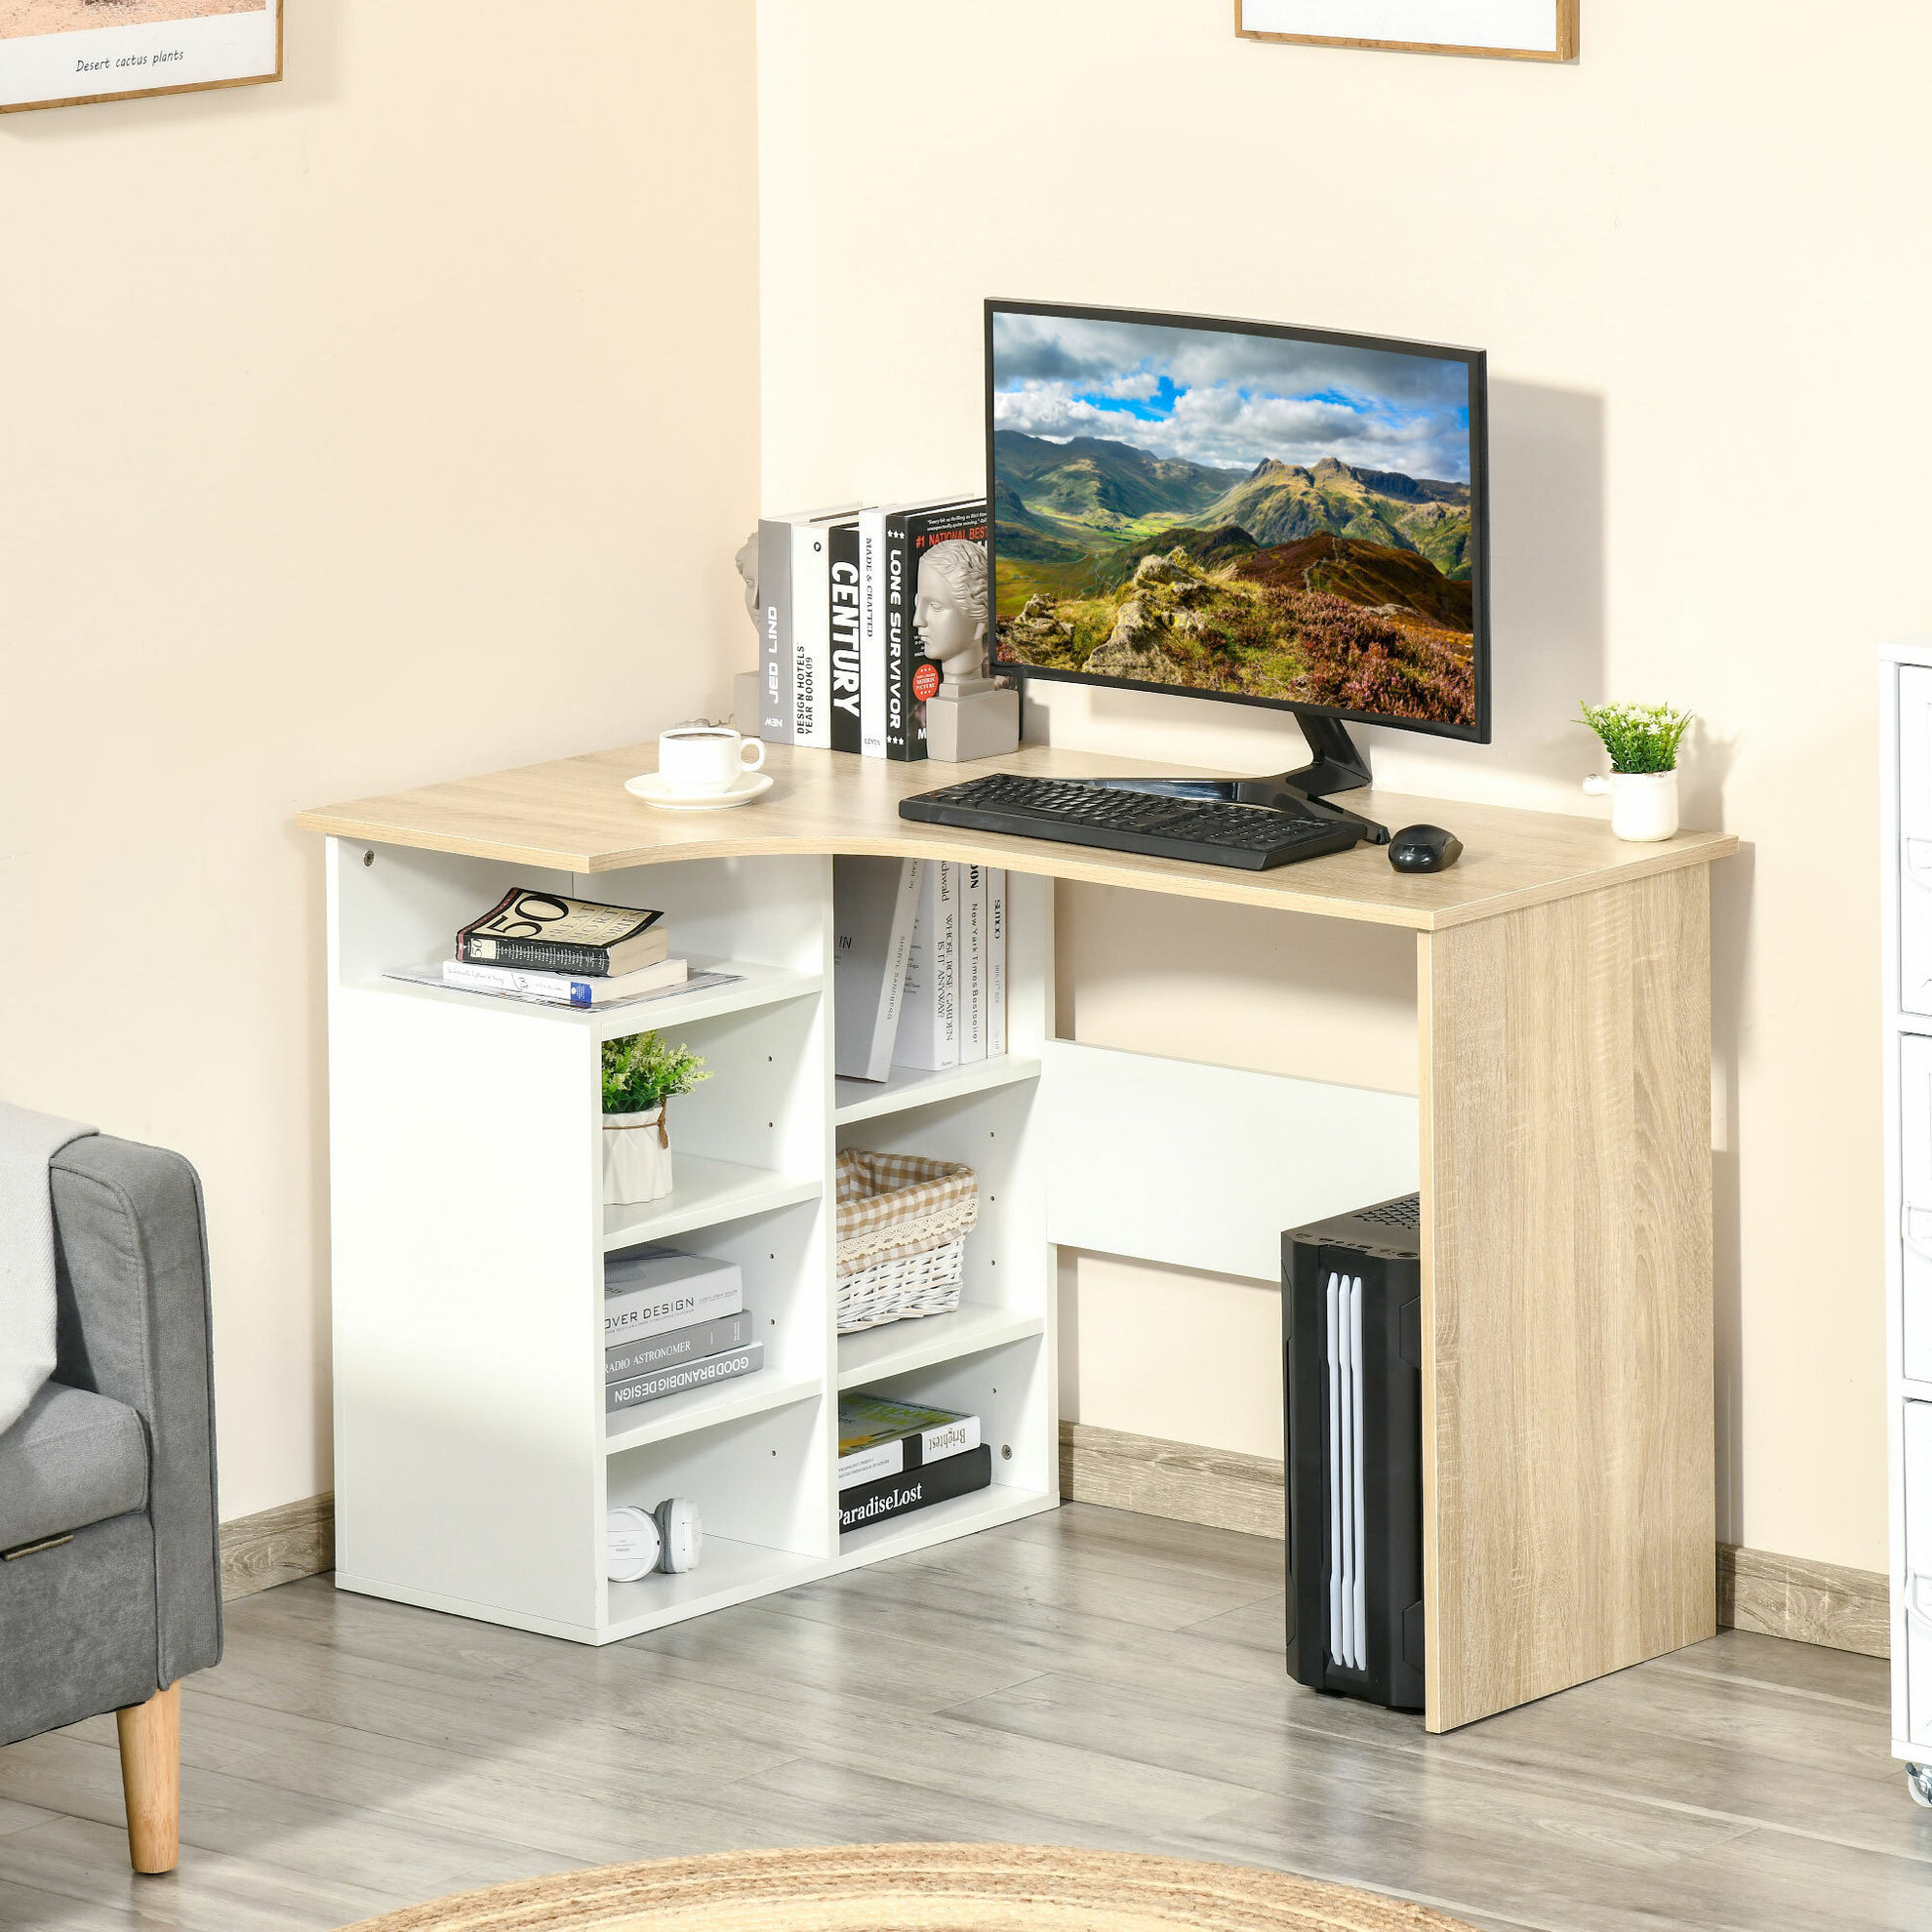 Schreibtisch Platzsparend, L-förmiges Design Farbe: beige | Weltbild.de